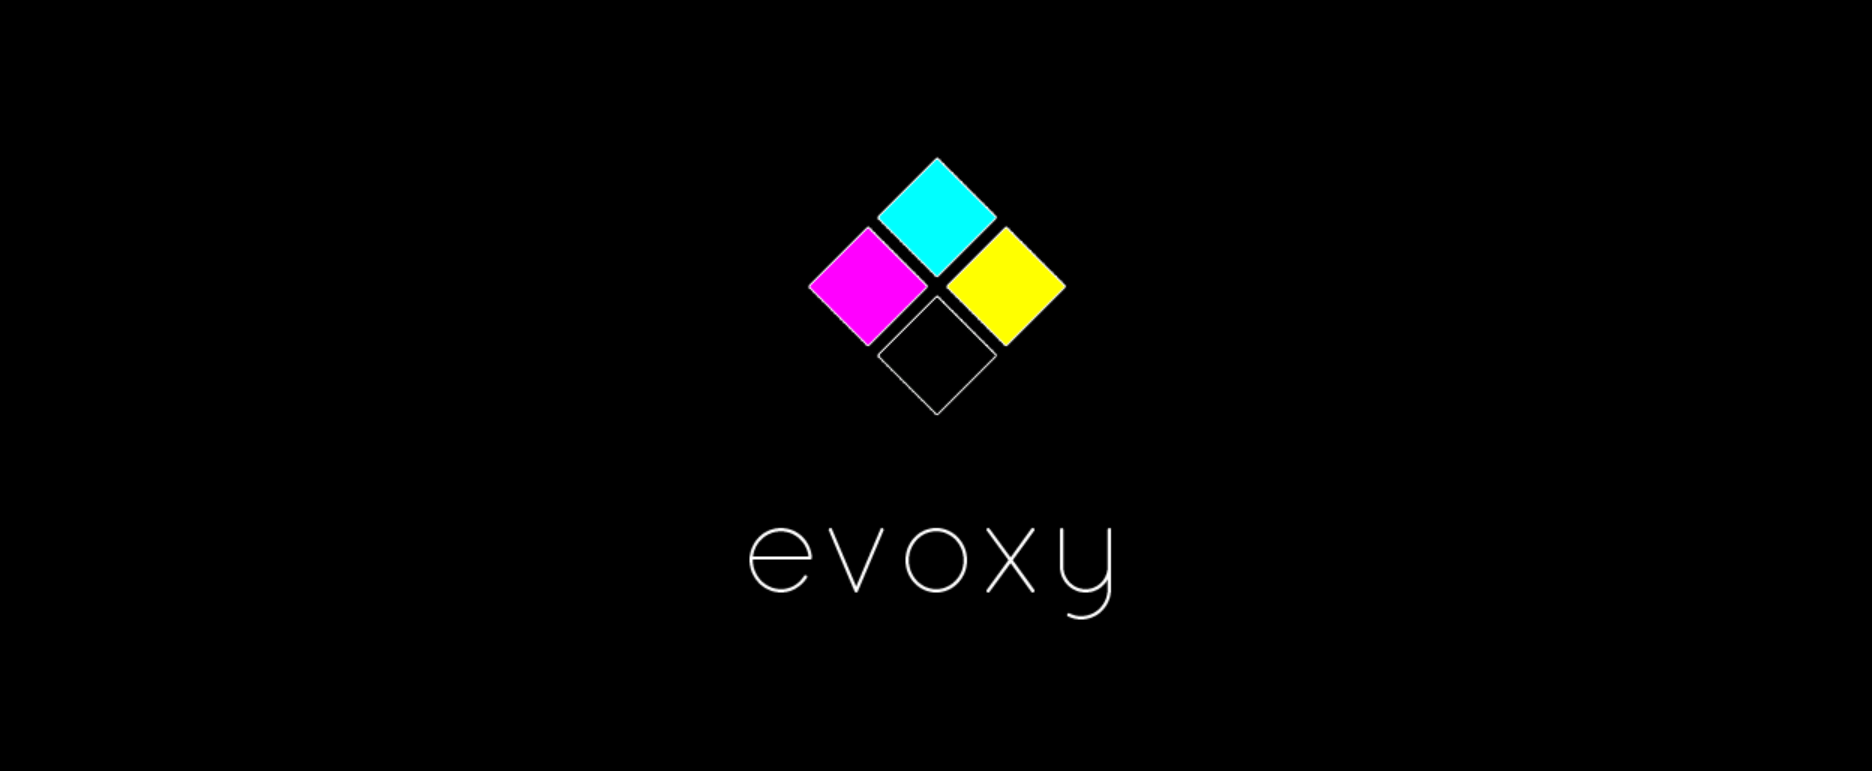 evoxy